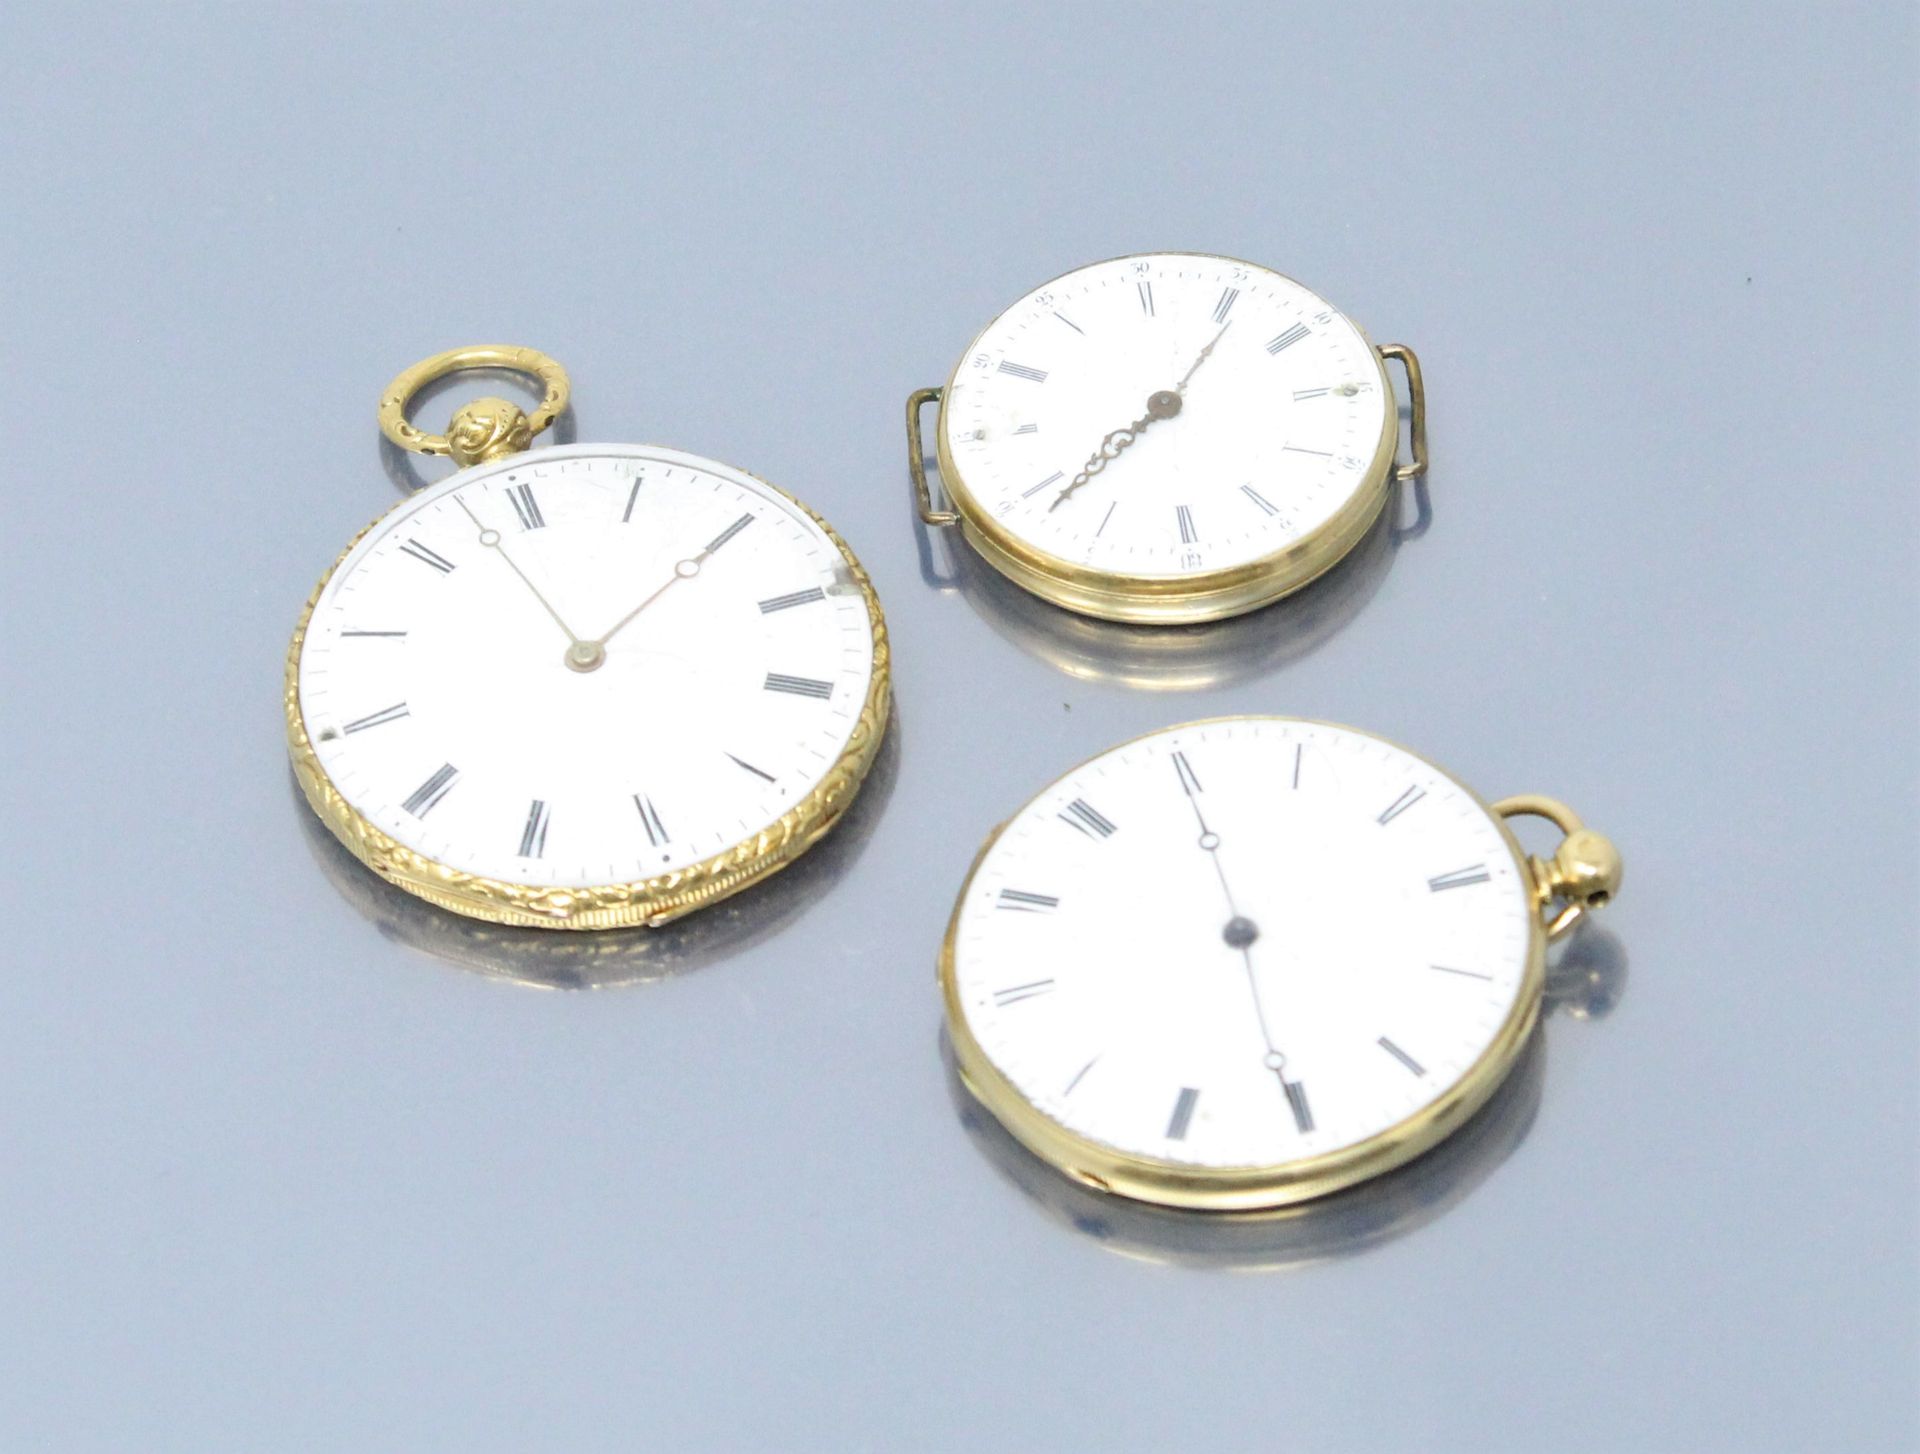 Null Lote de tres relojes de bolsillo de oro amarillo de 18k (750).

Esferas con&hellip;